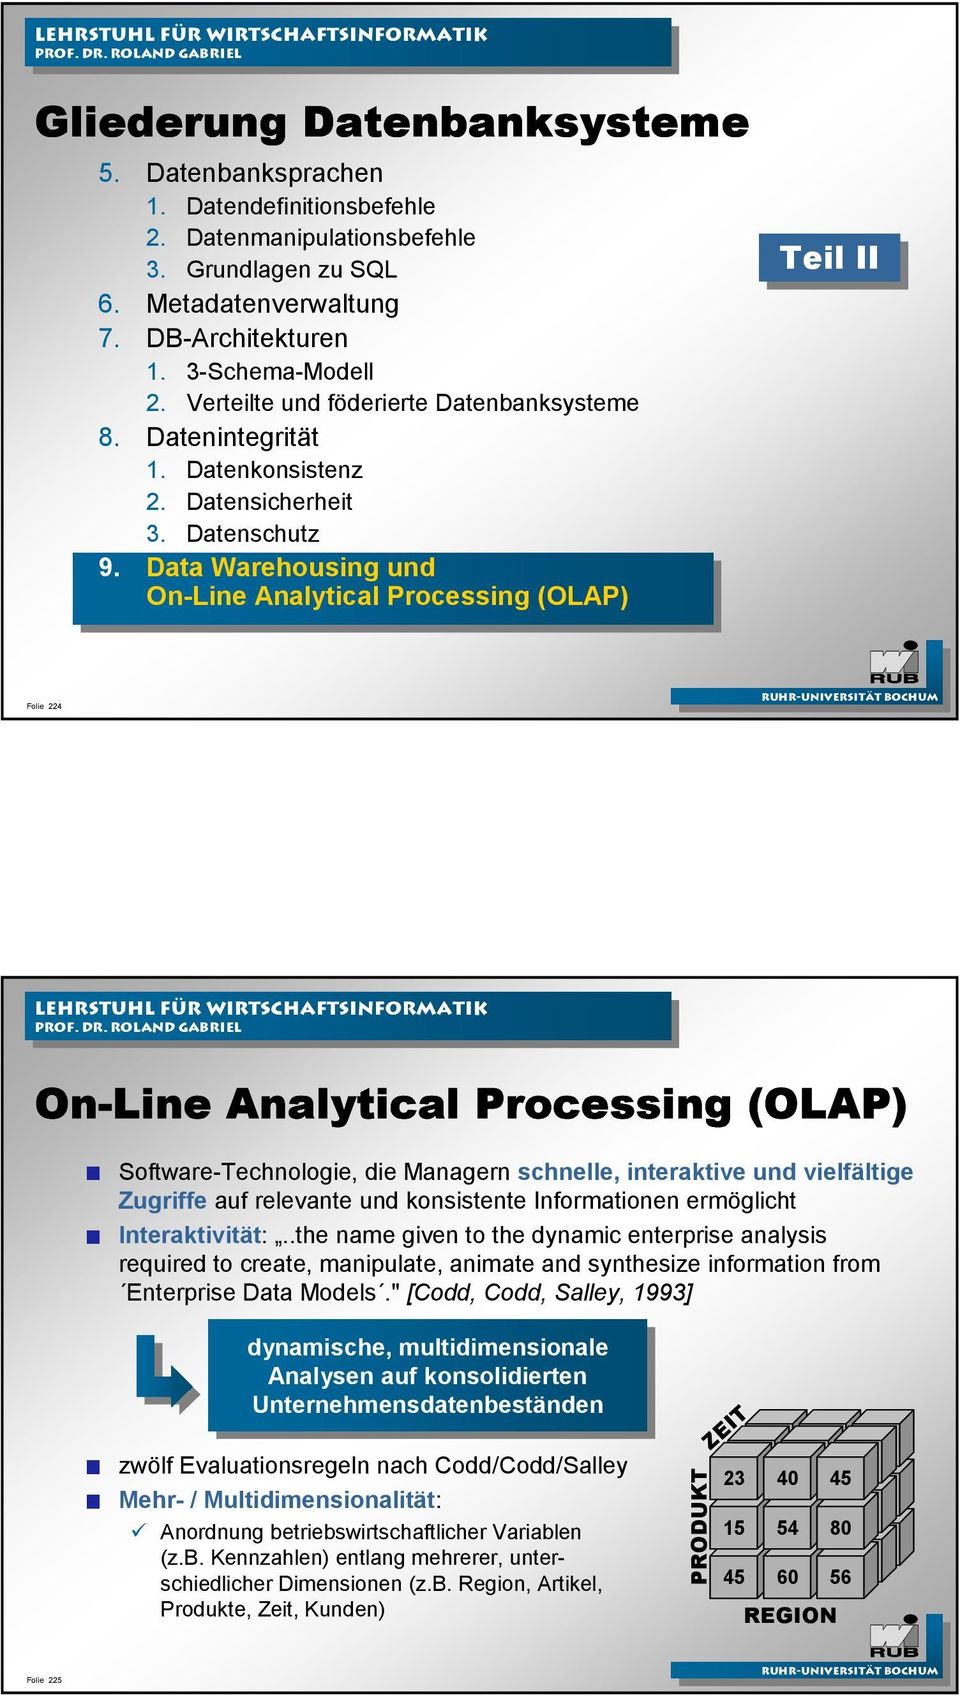 Data Warehousing und On-Line Analytical Processing (OLAP) Teil II II On-Line Analytical Processing (OLAP) Software-Technologie, die Managern schnelle, interaktive und vielfältige Zugriffe auf